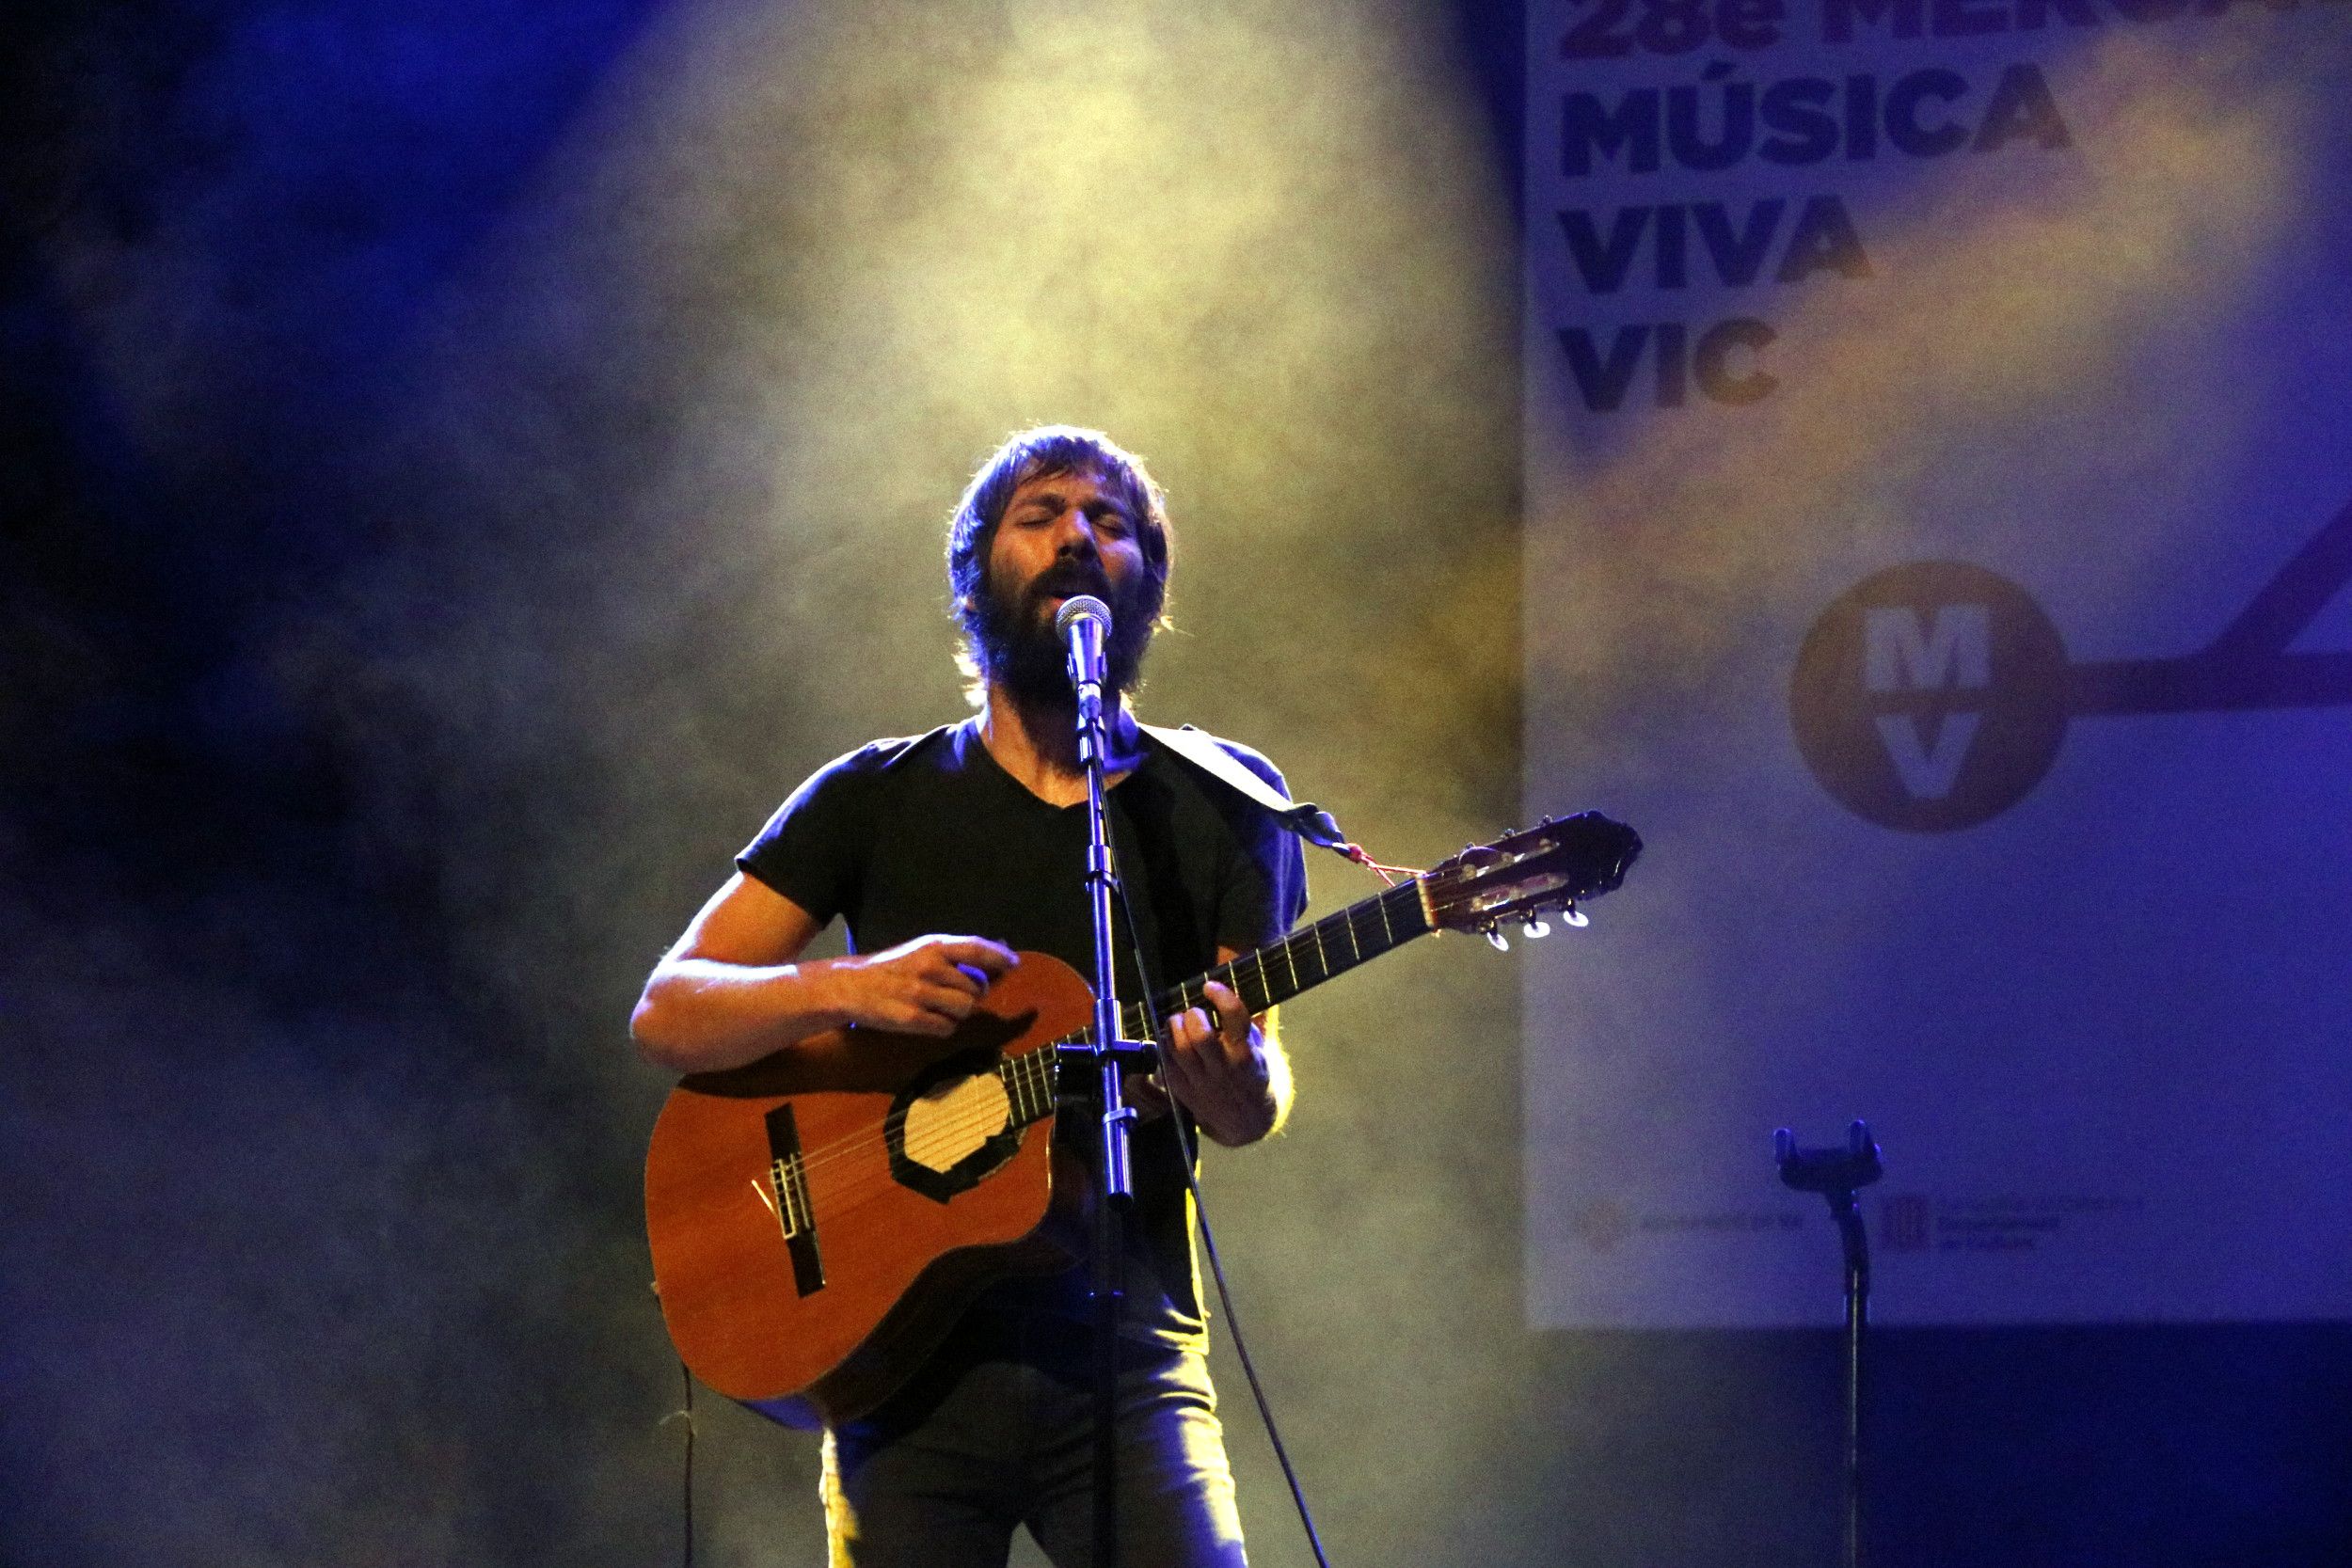 Enric Montefusco debuta en solitario en el Música Viva de Vic